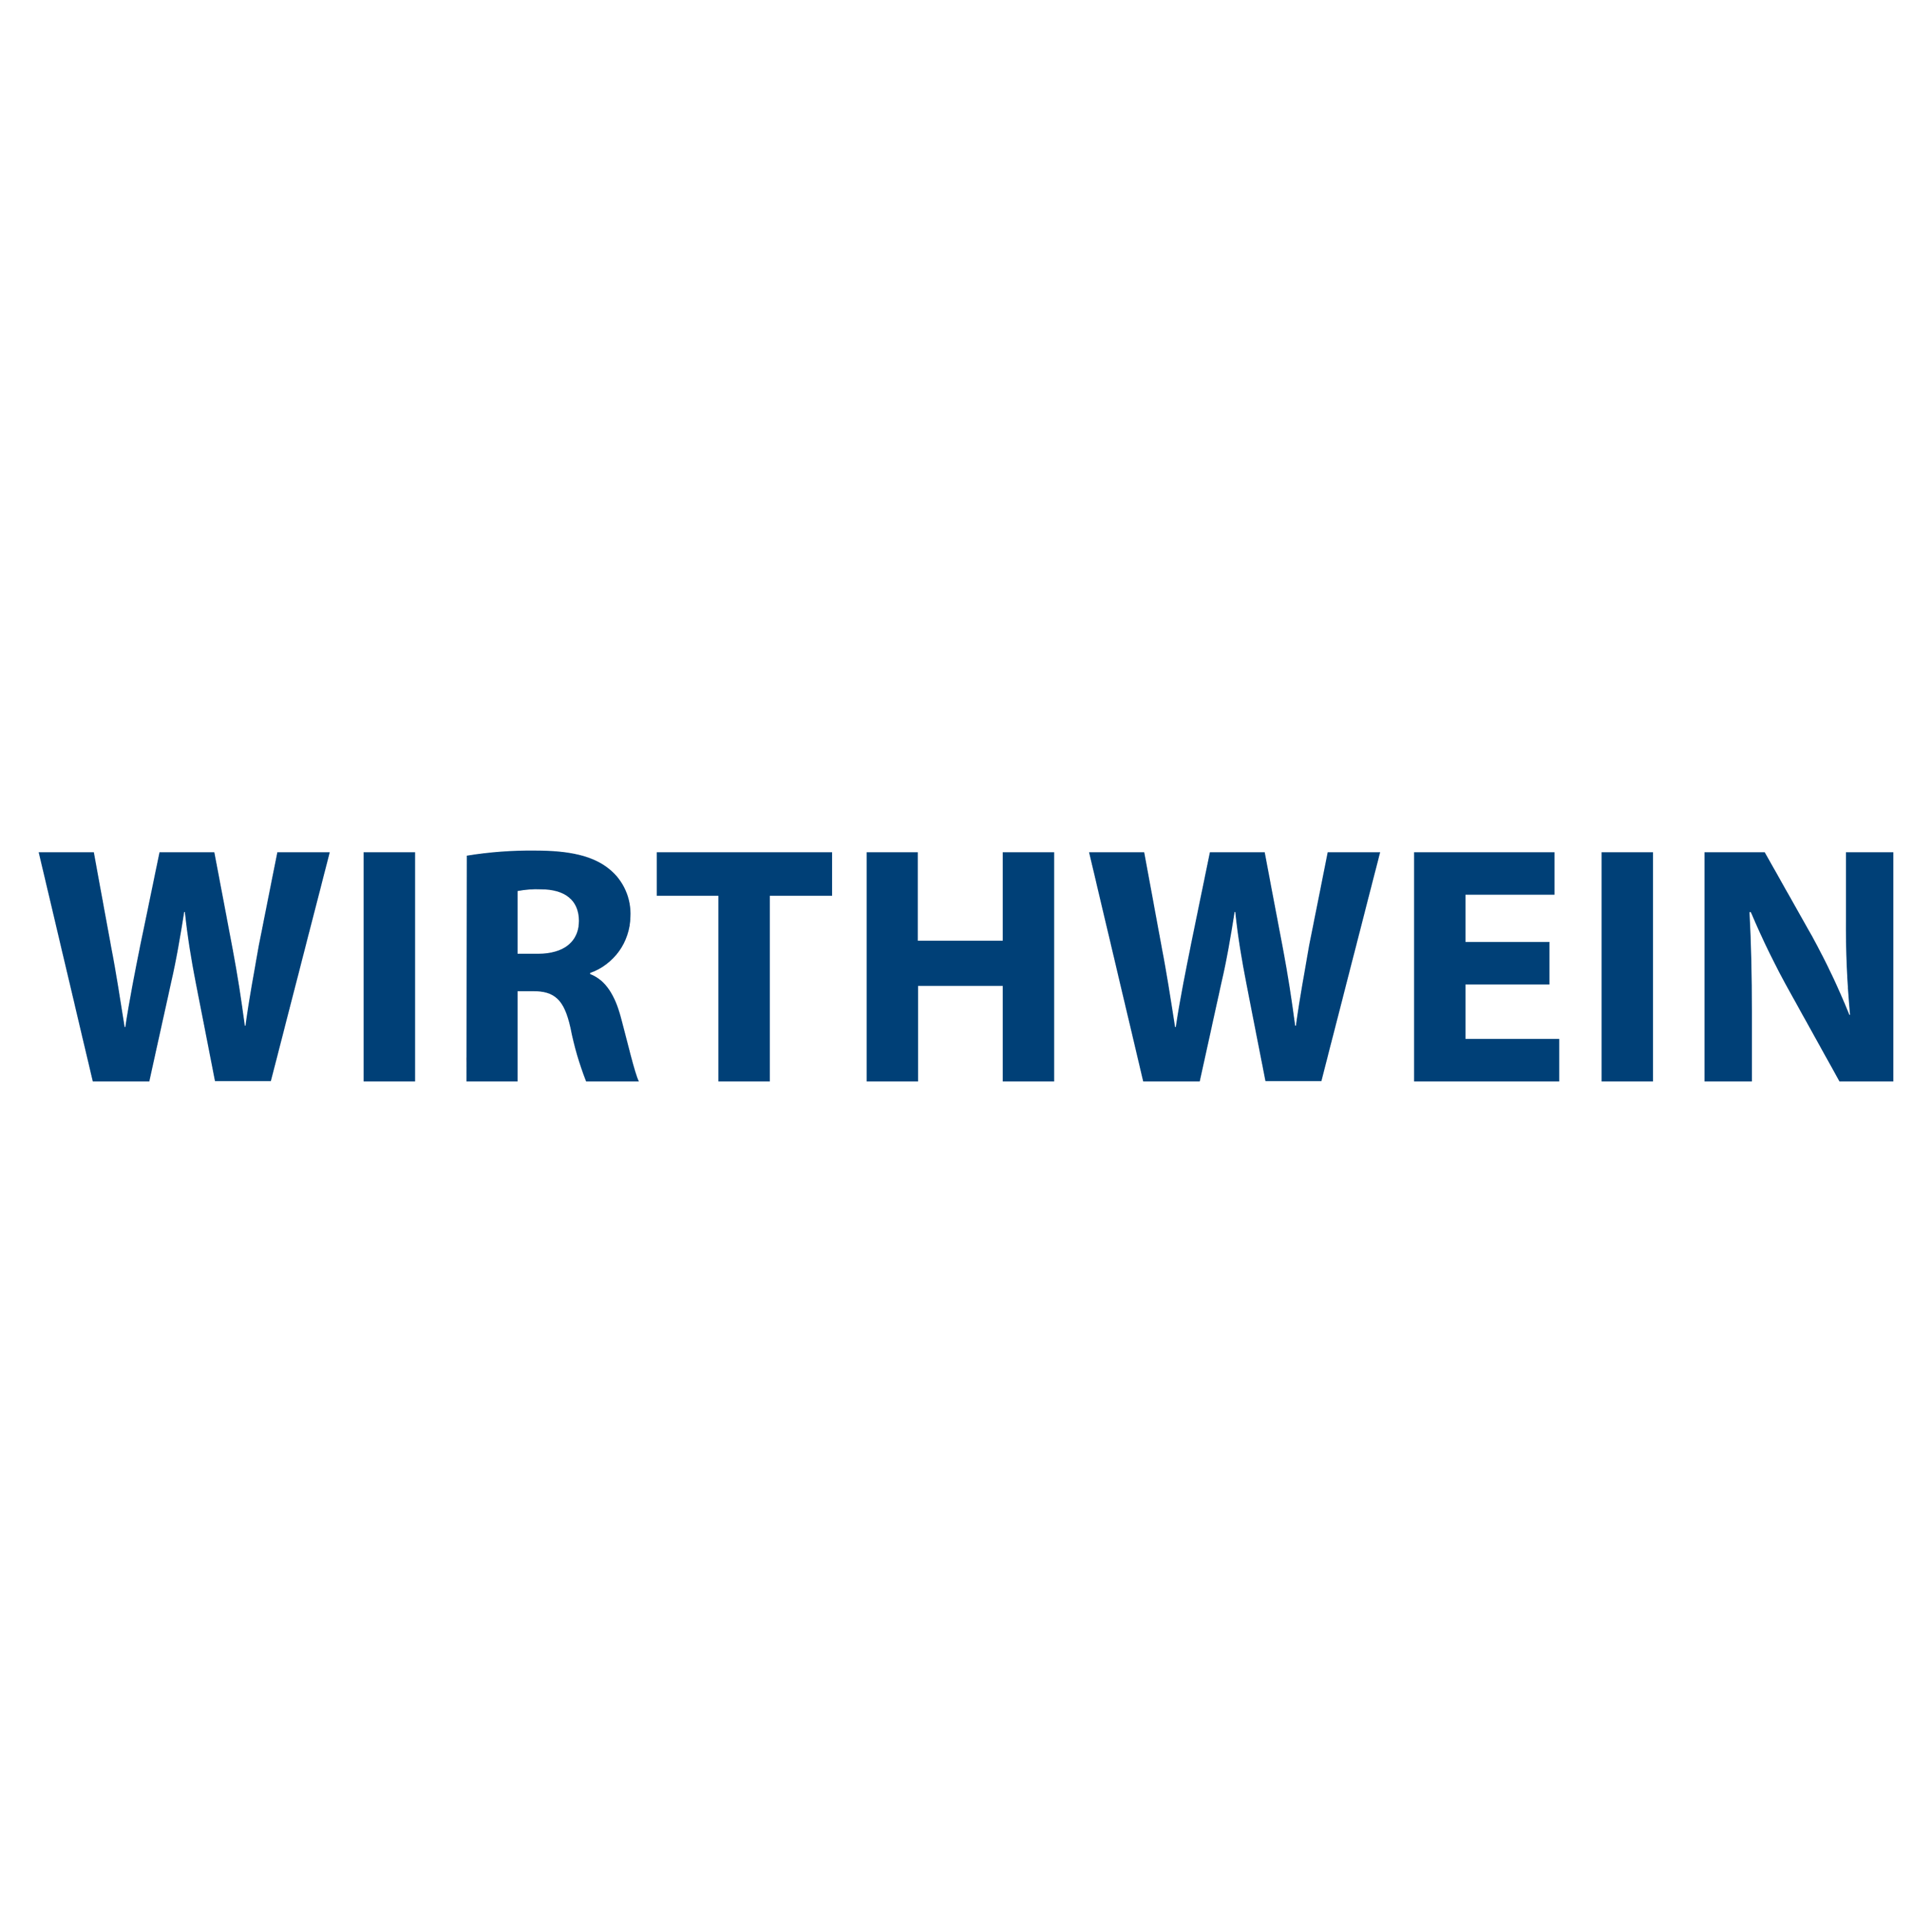 Wirthwein Logo Transparent Image